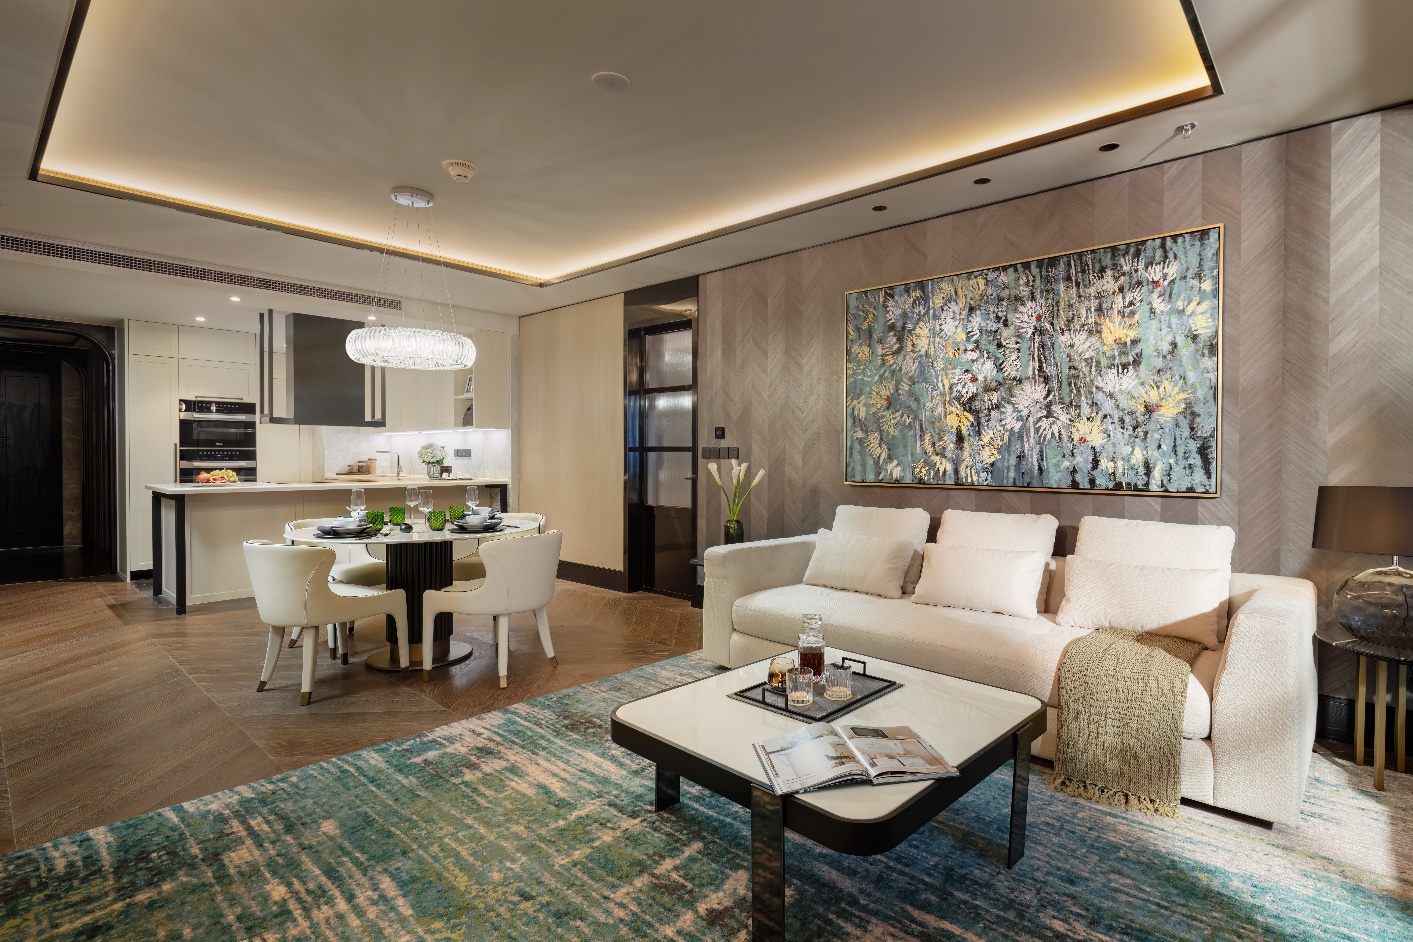 Khai trương tổ hợp chung cư cao cấp The Ritz-Carlton Residences, Hà Nội tại The Grand - Ảnh 1.